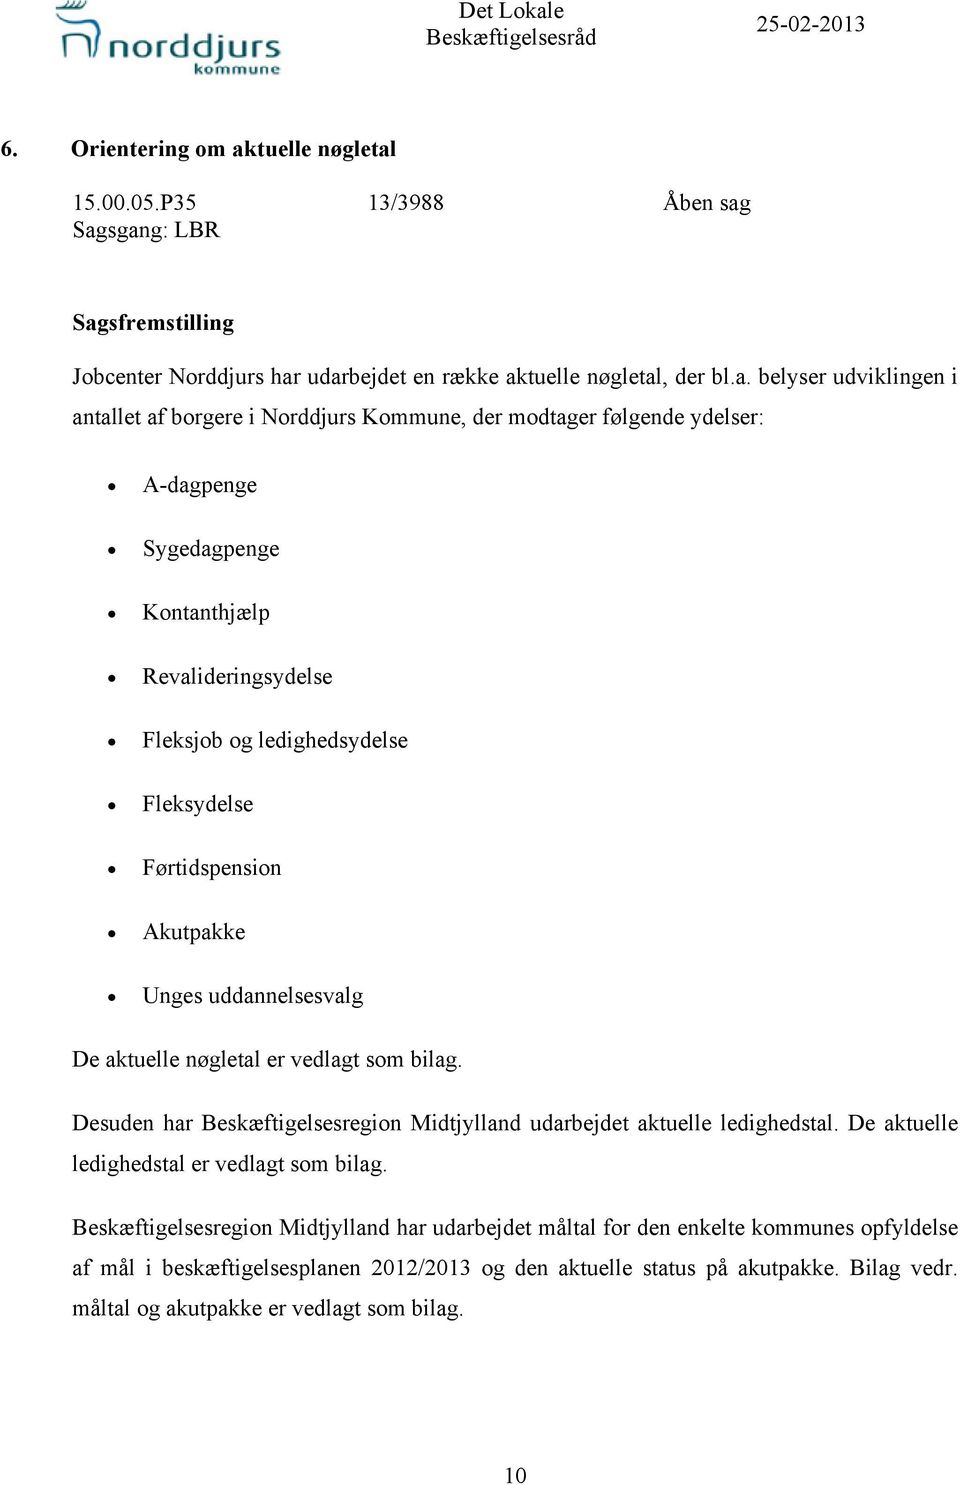 Sagsgang: LBR Sagsfremstilling Jobcenter Norddjurs har udarbejdet en række aktuelle nøgletal, der bl.a. belyser udviklingen i antallet af borgere i Norddjurs Kommune, der modtager følgende ydelser: